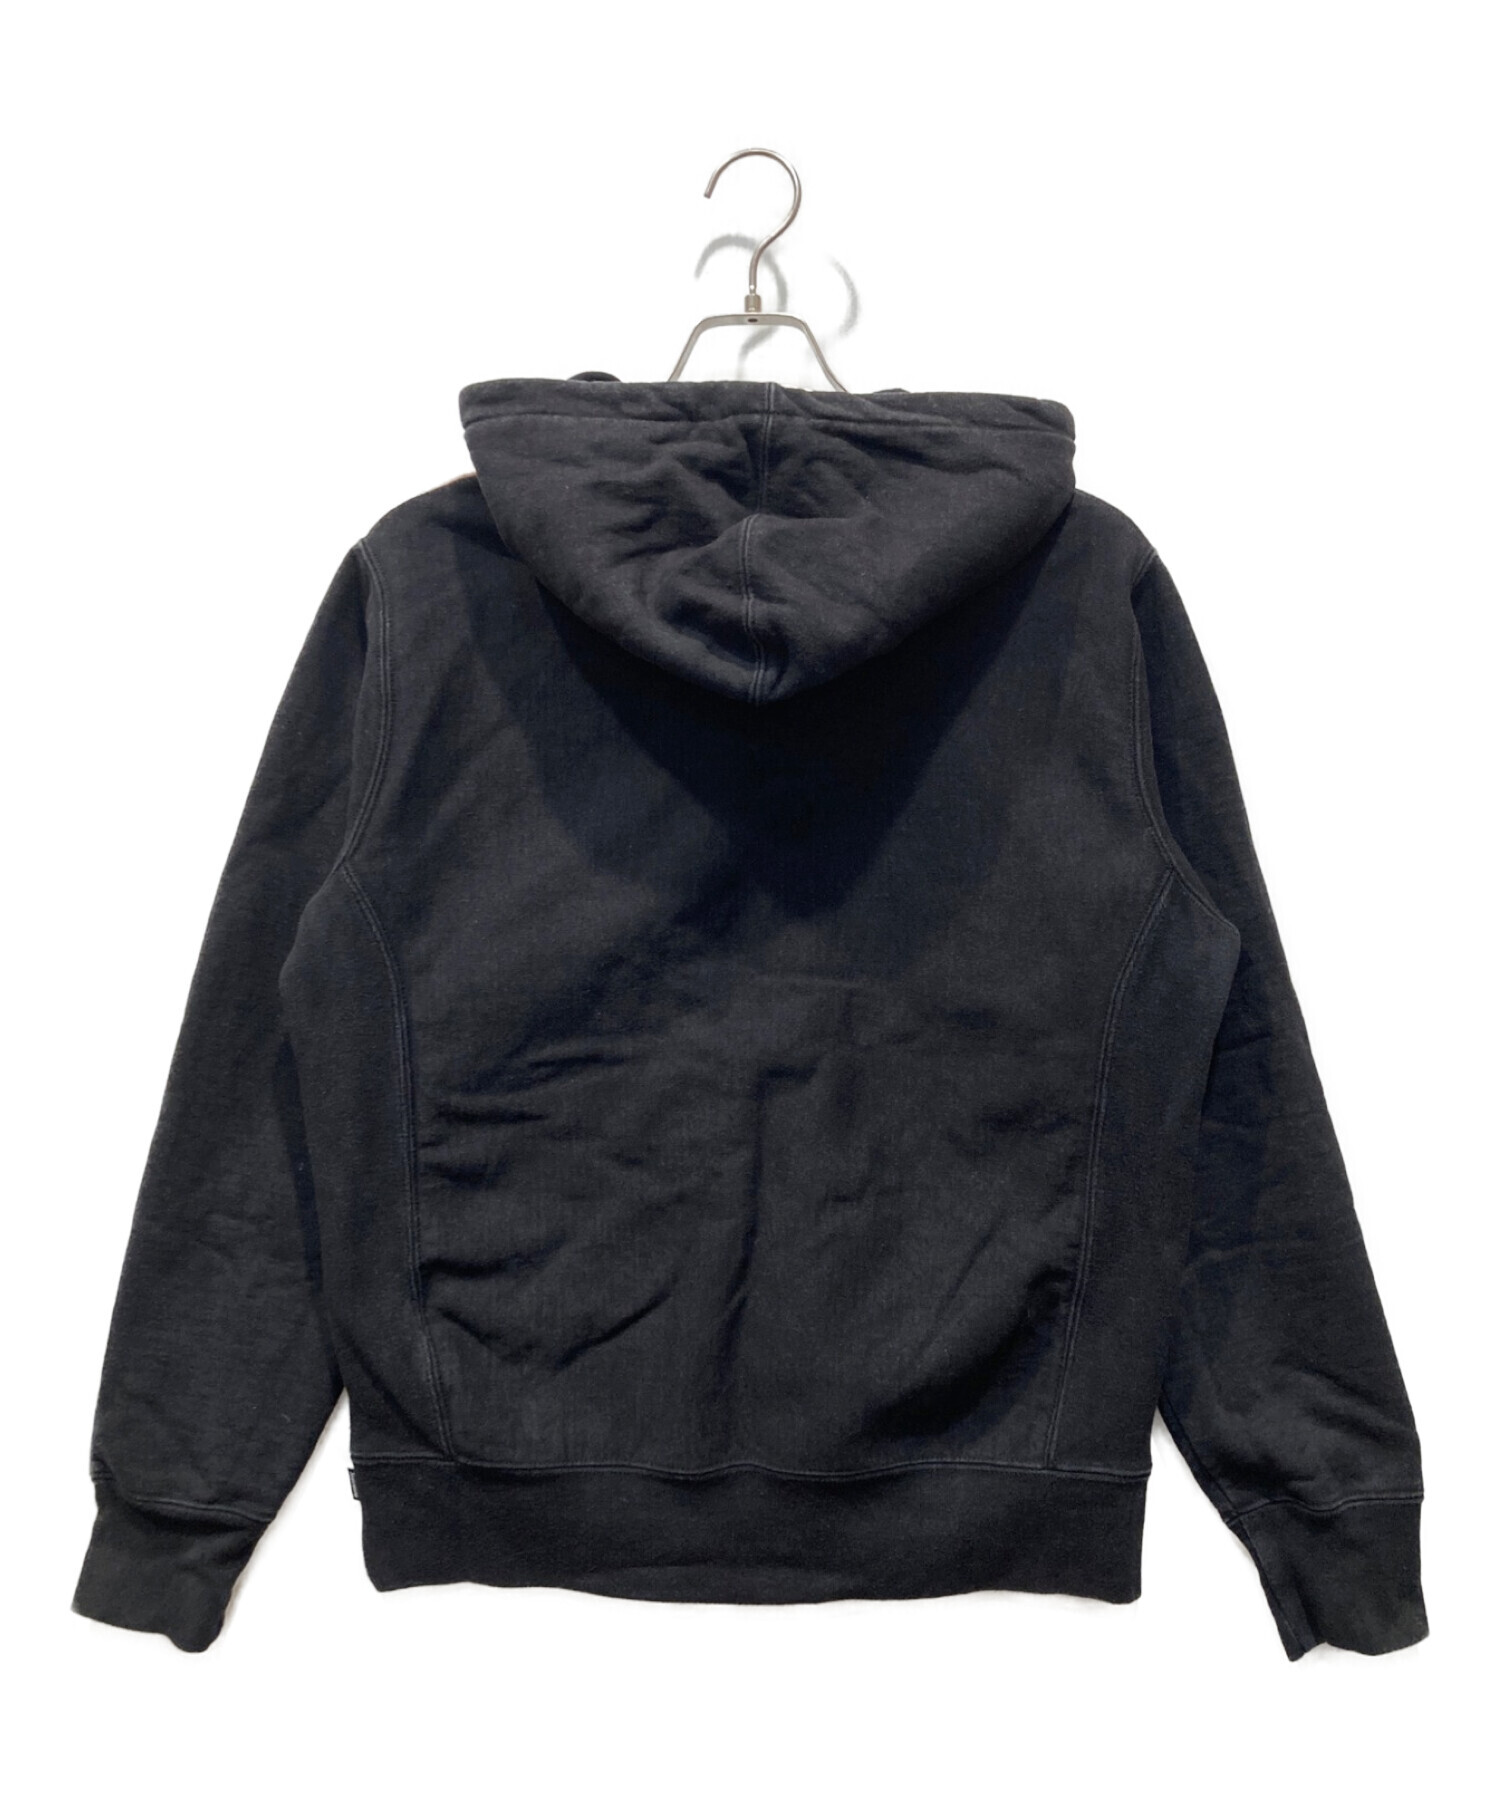 Supreme (シュプリーム) Split Old English Hooded Sweatshirt ブラック×ブラウン サイズ:S